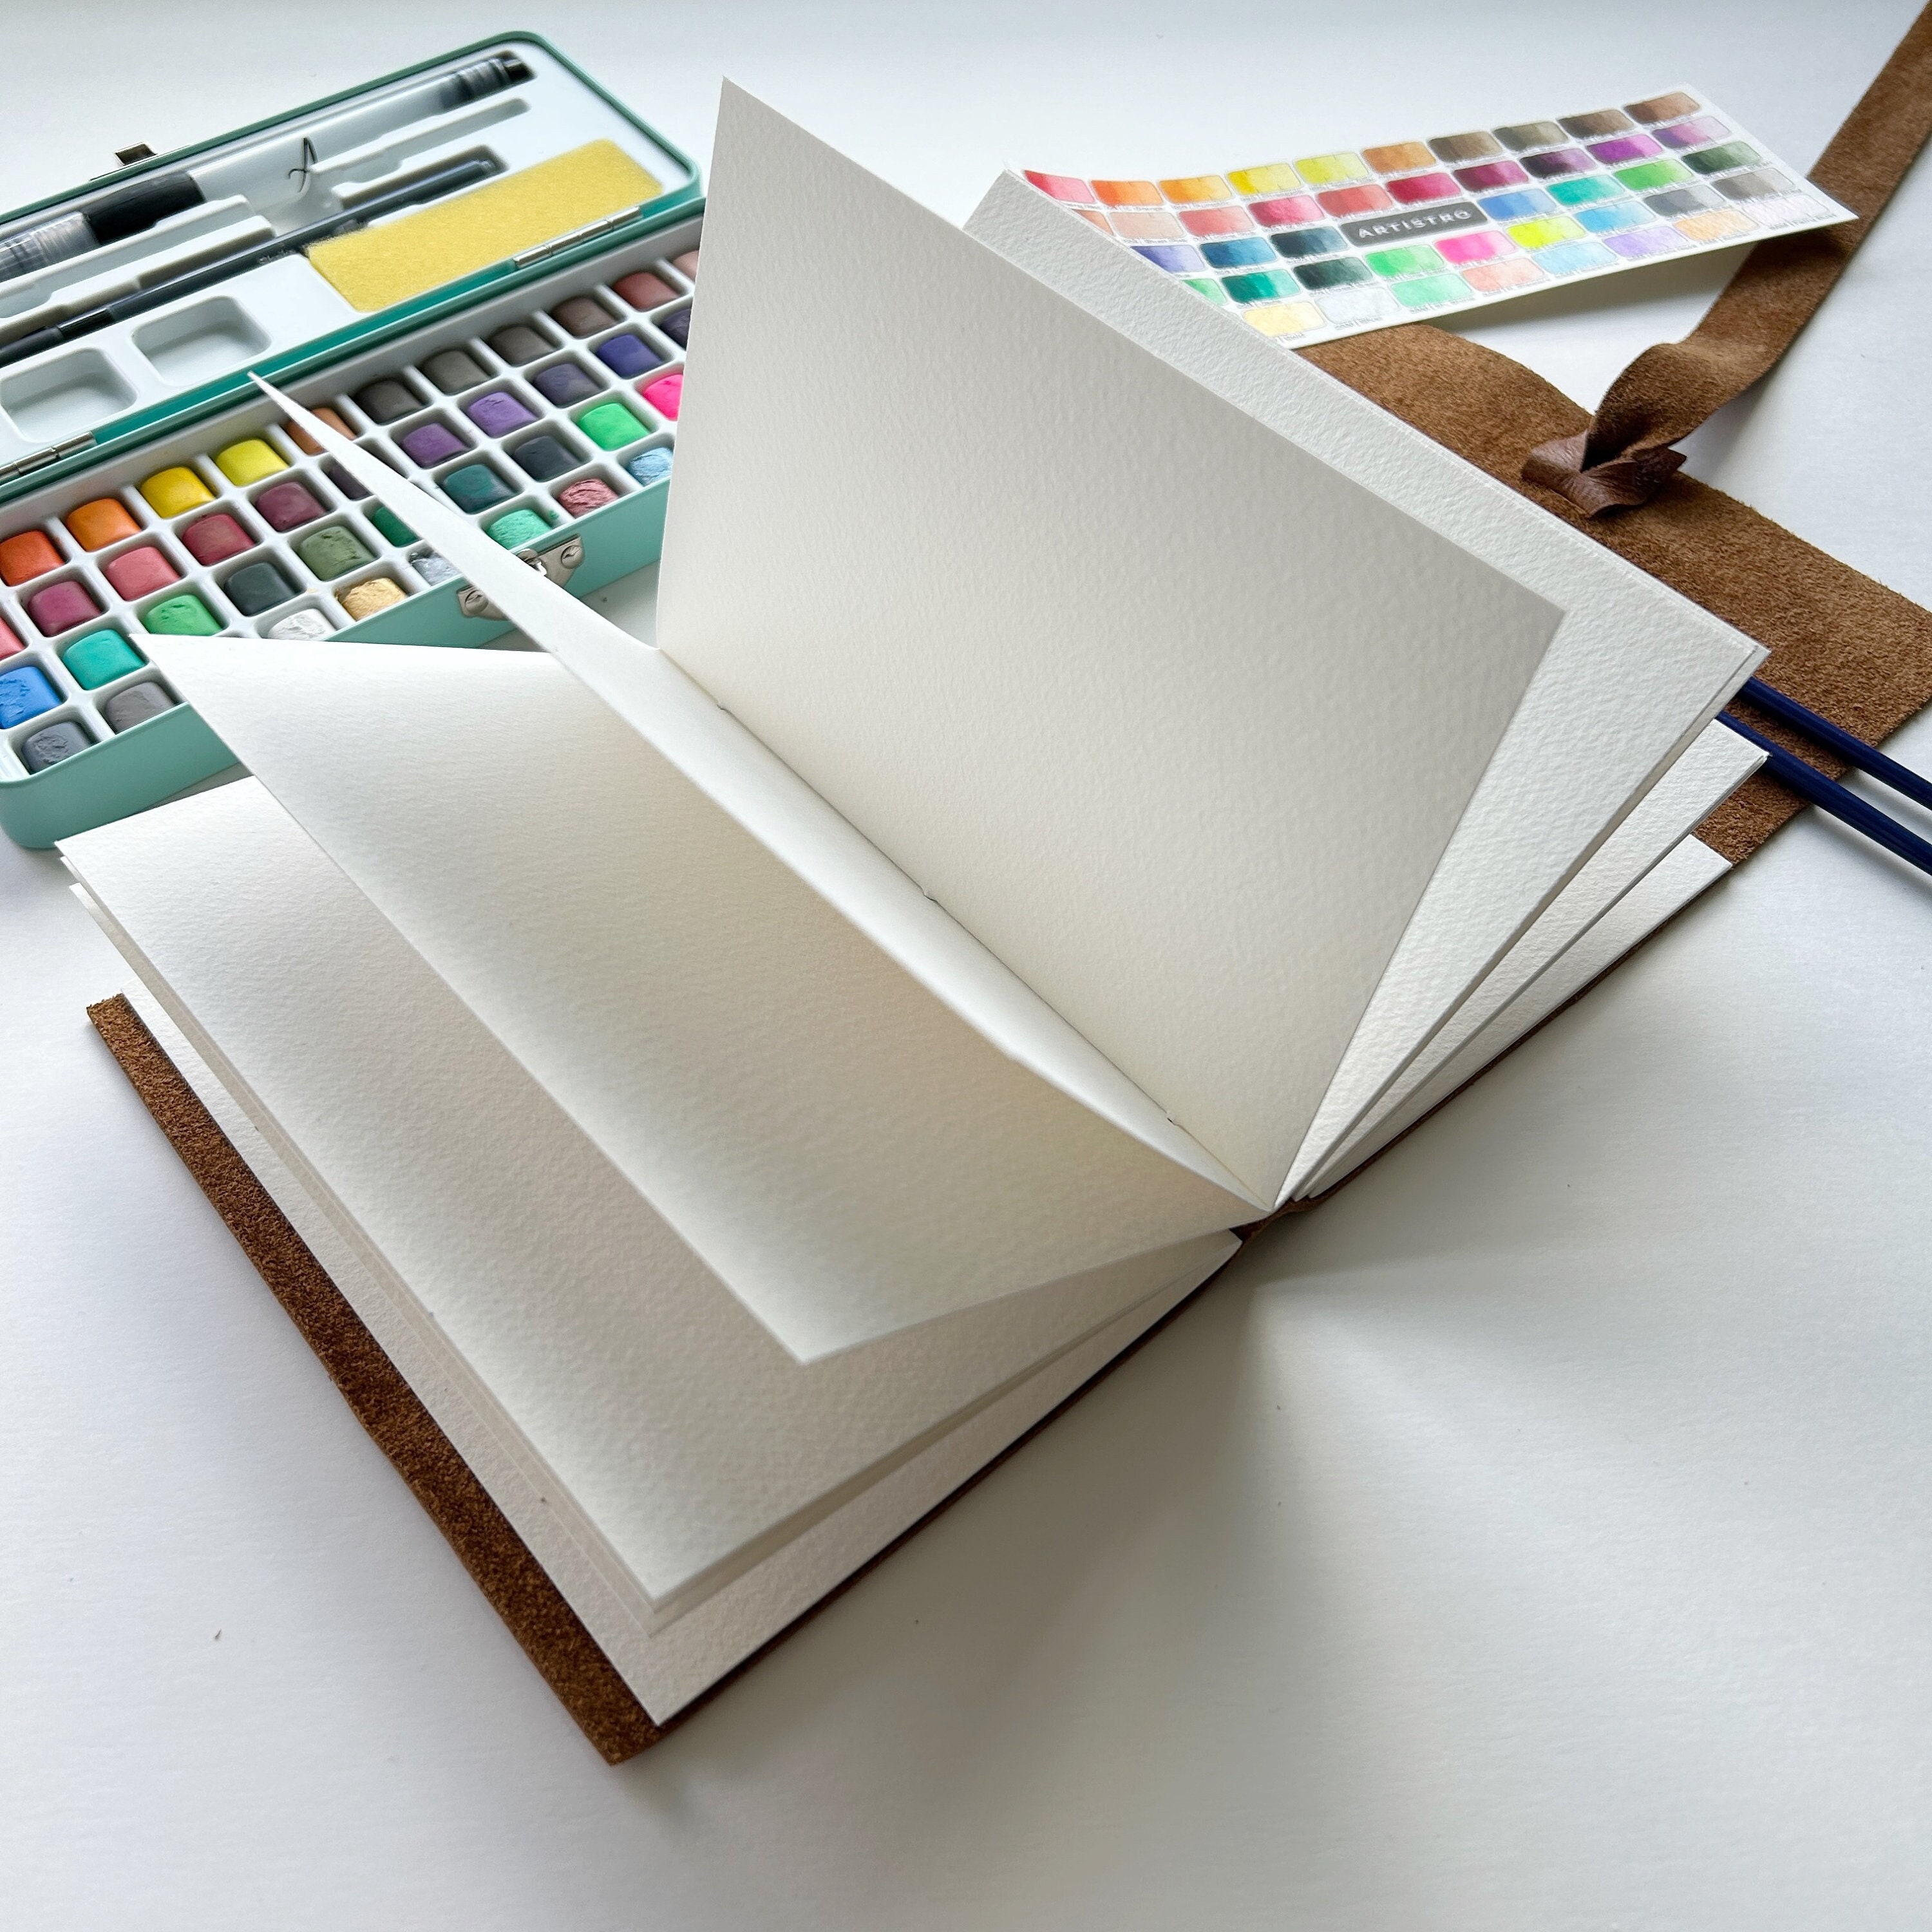 Fabriano Watercolor Paper Samples Artistico 5 Studio Hot Press